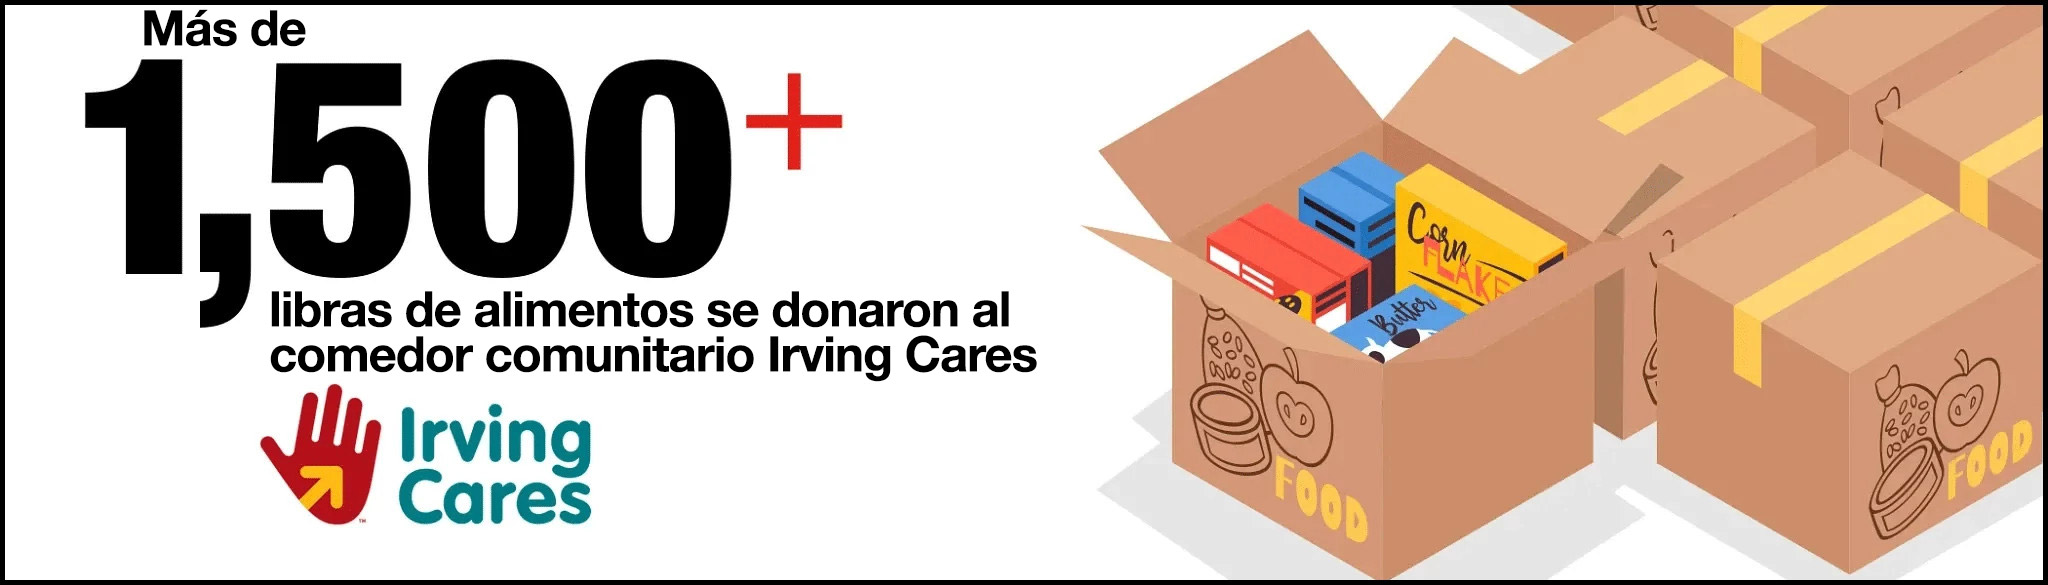 Se donaron más de 1,500 libras de alimentos al comedor comunitario Irving Cares